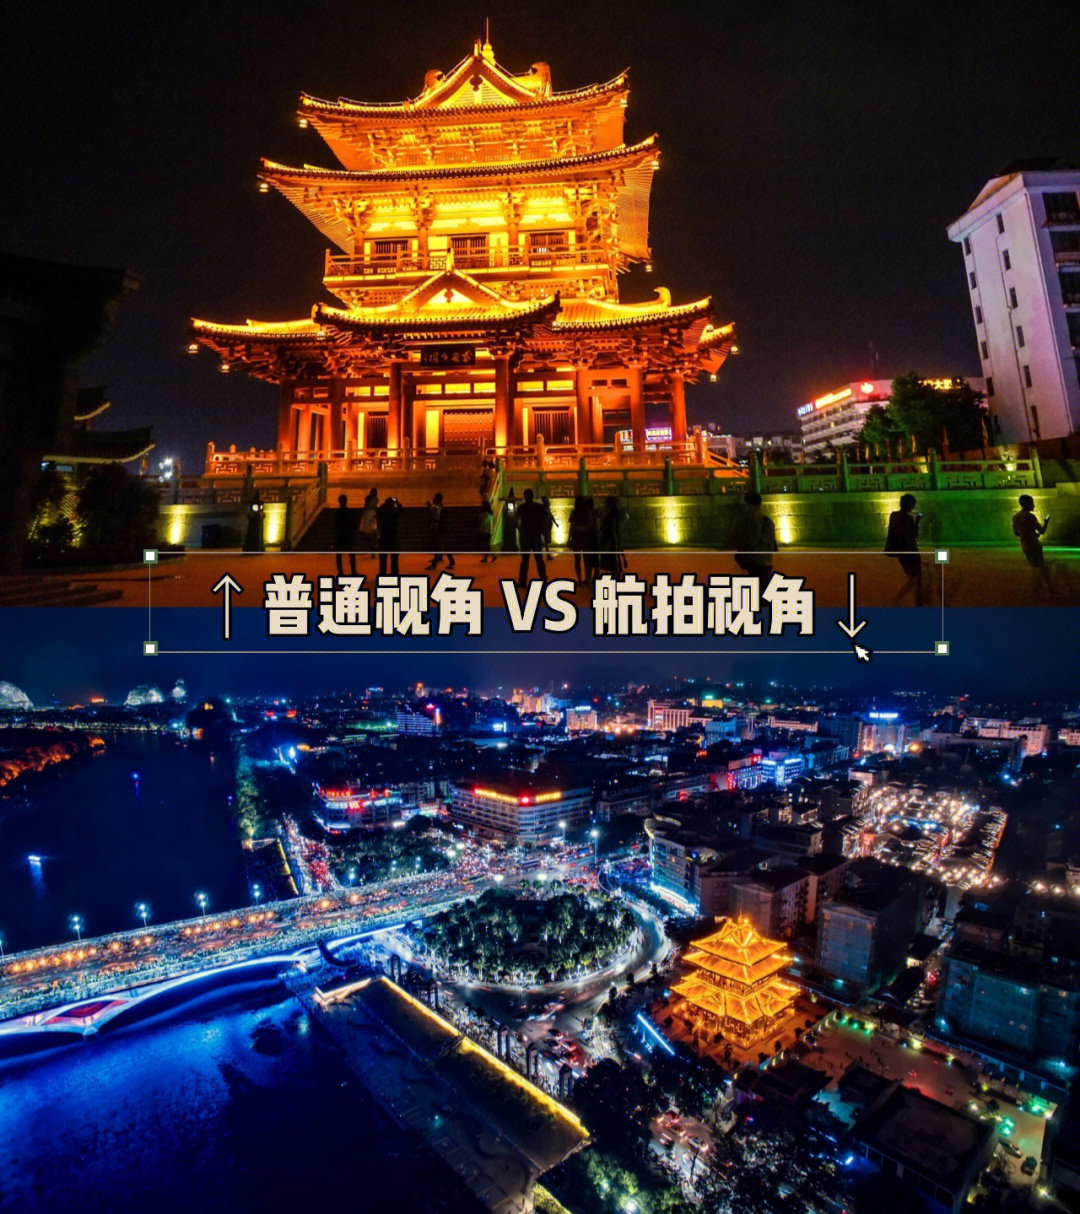 桂林高楼迷图片